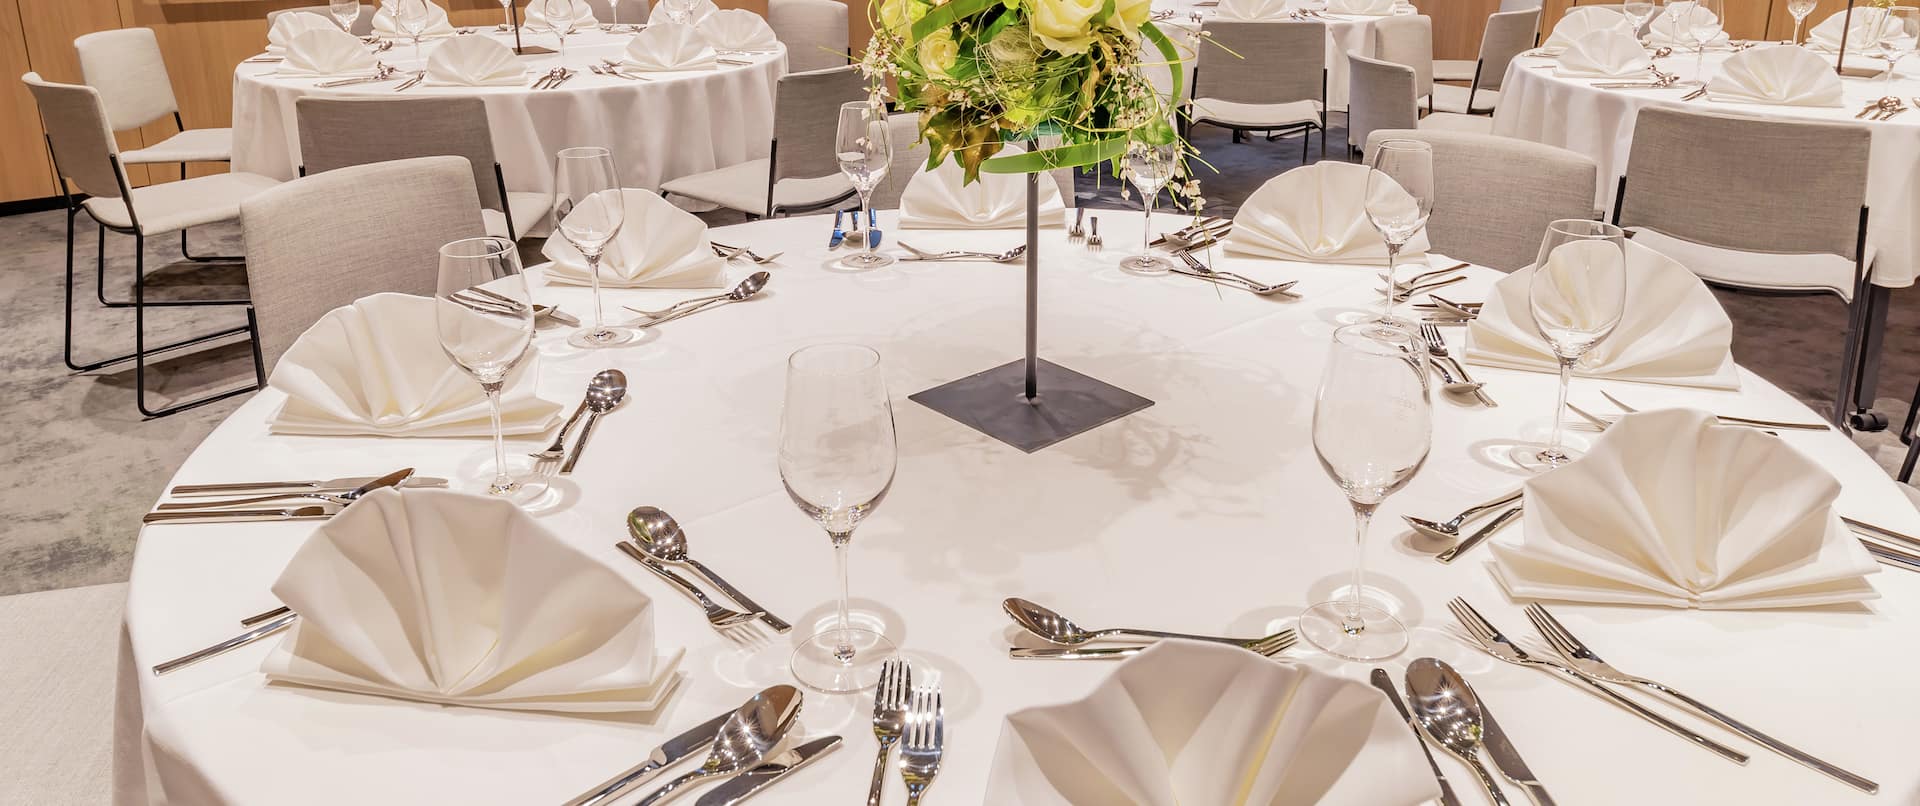 Anordnung für Hochzeitsfeier mit runden Tischen